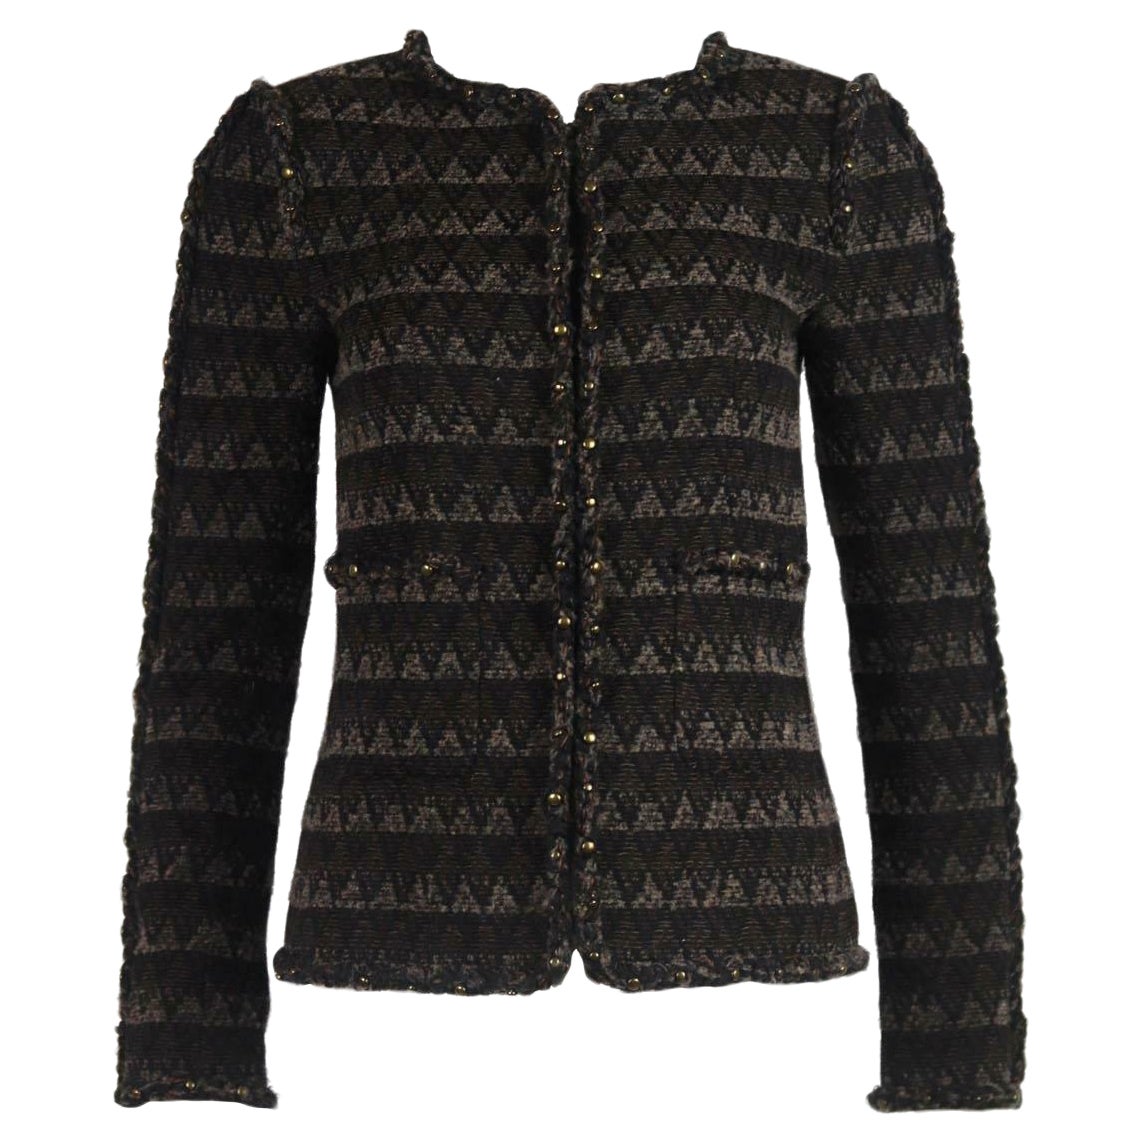 Chanel 2014 Tweed Wool Blend Jacket